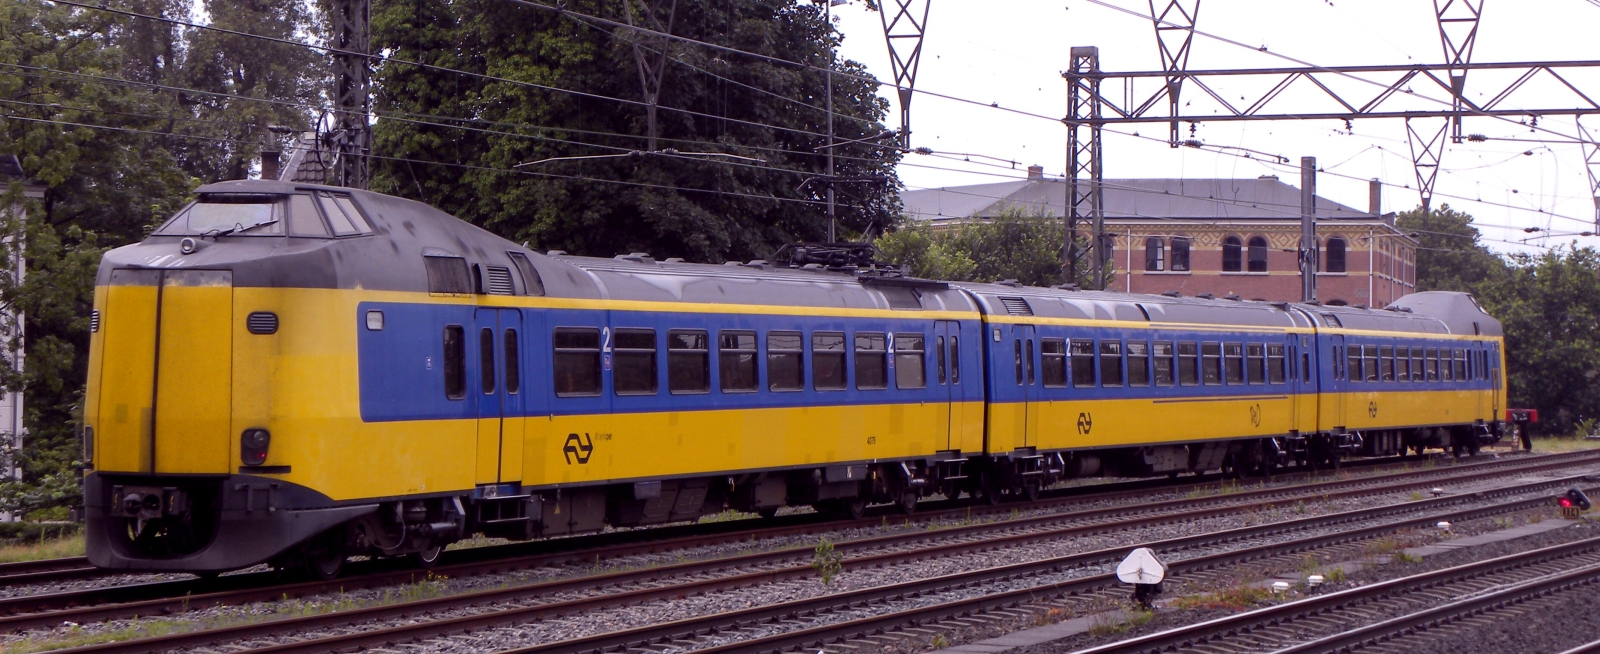 No. 4075 in June 2009 in Haarlem